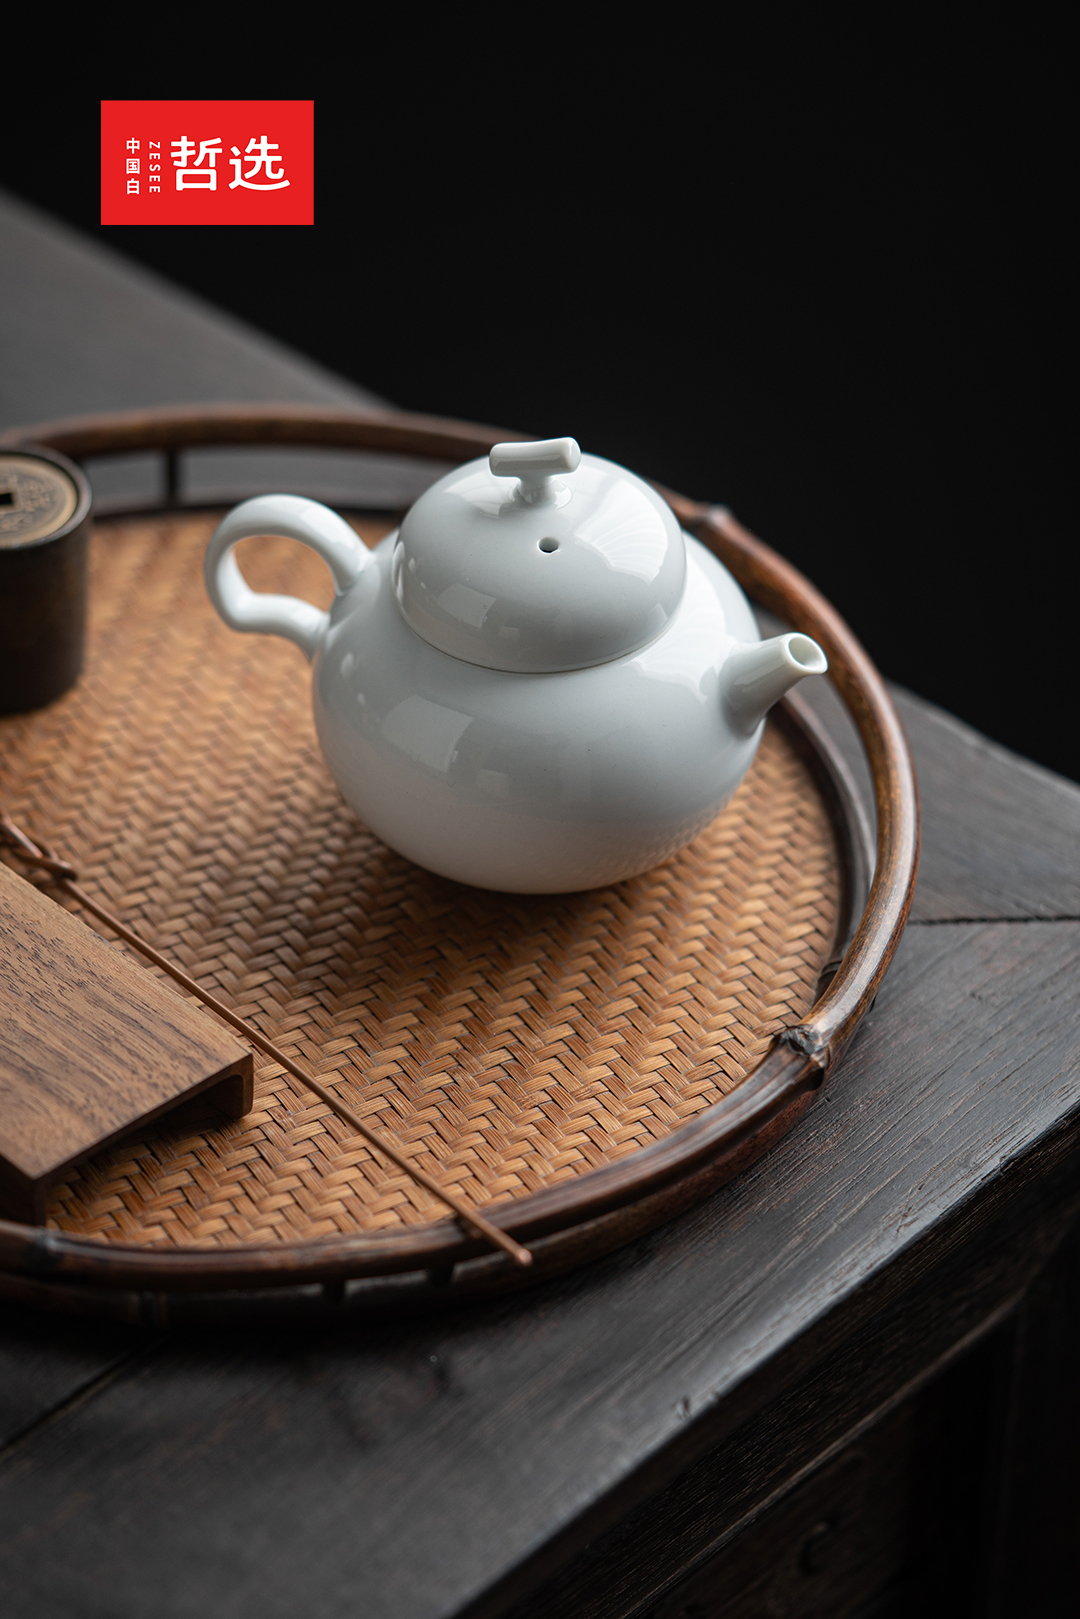 【中国白·哲选】青瓷系列茶壶 3 款